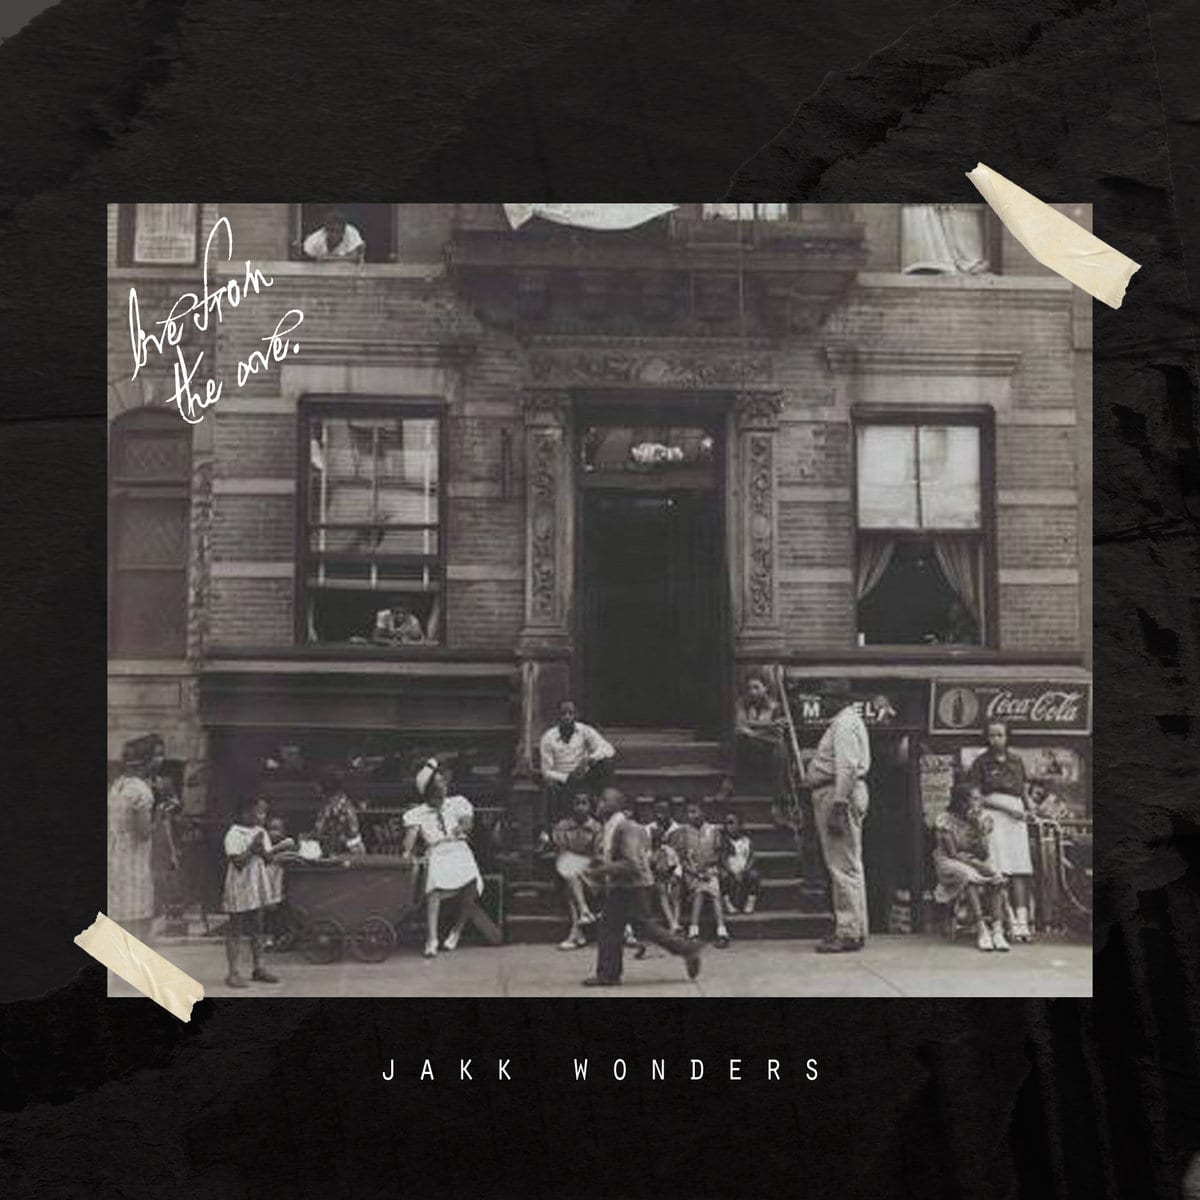 New Instrumental Album By Jakk Wonders – “Live From The Avenue”